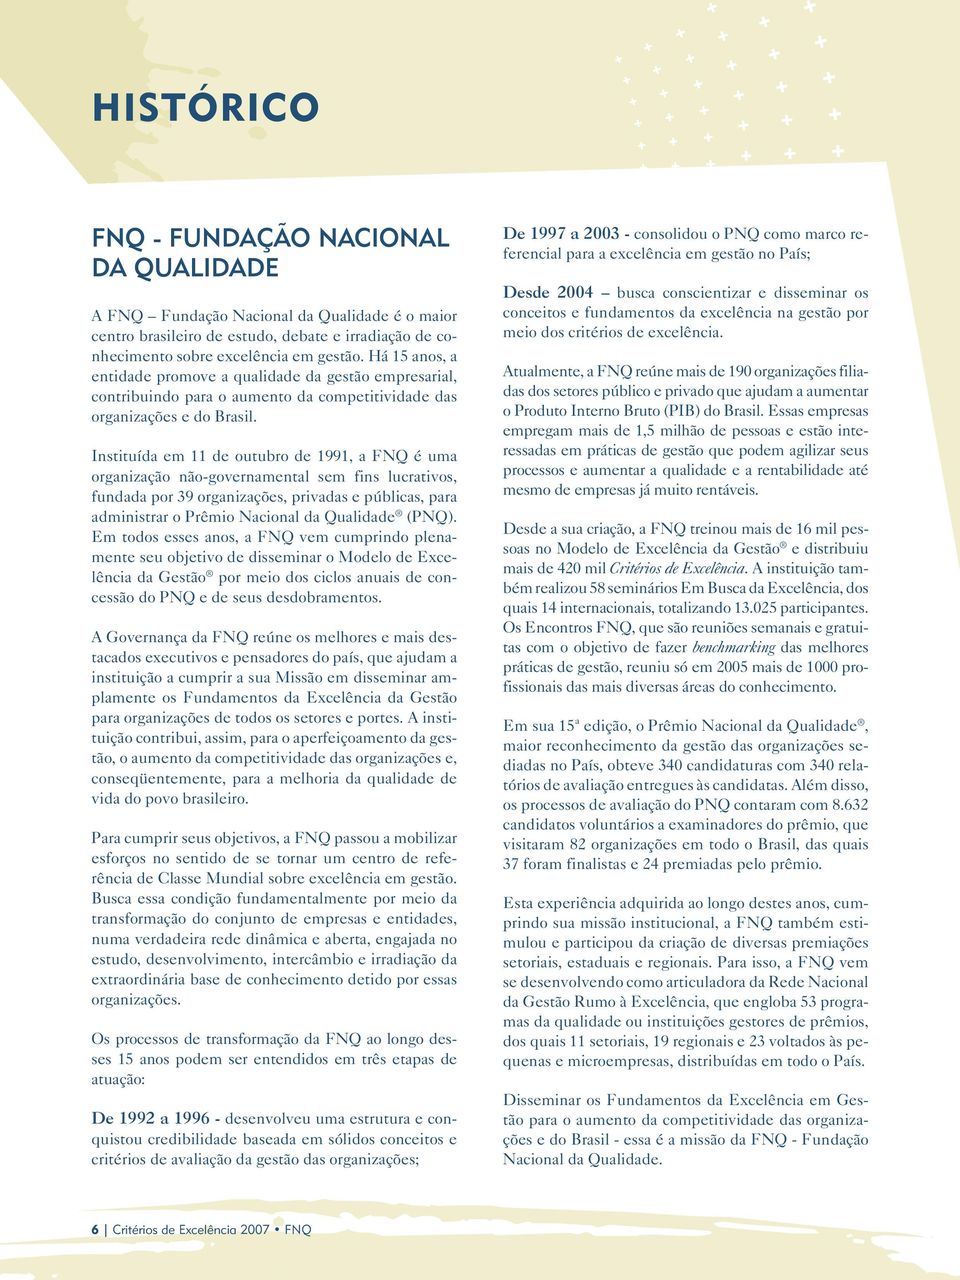 Instituída em 11 de outubro de 1991, a FNQ é uma organização não-governamental sem fins lucrativos, fundada por 39 organizações, privadas e públicas, para administrar o Prêmio Nacional da Qualidade